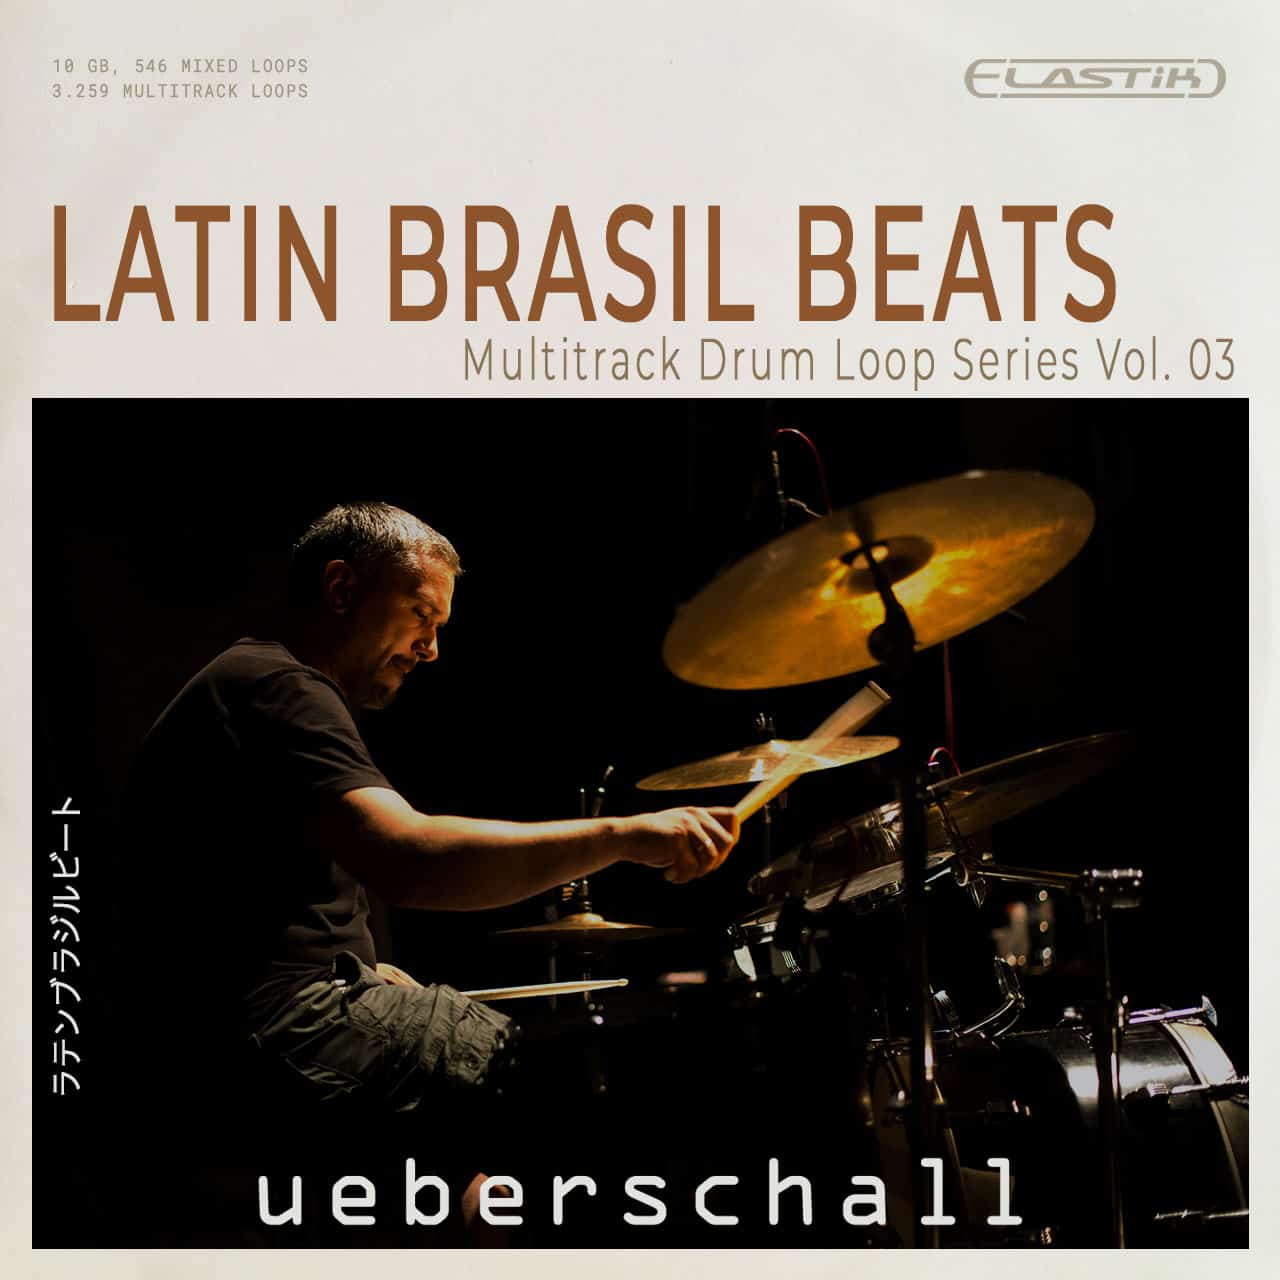 Latin Brazil Beats ueberschall 1280x1280 1